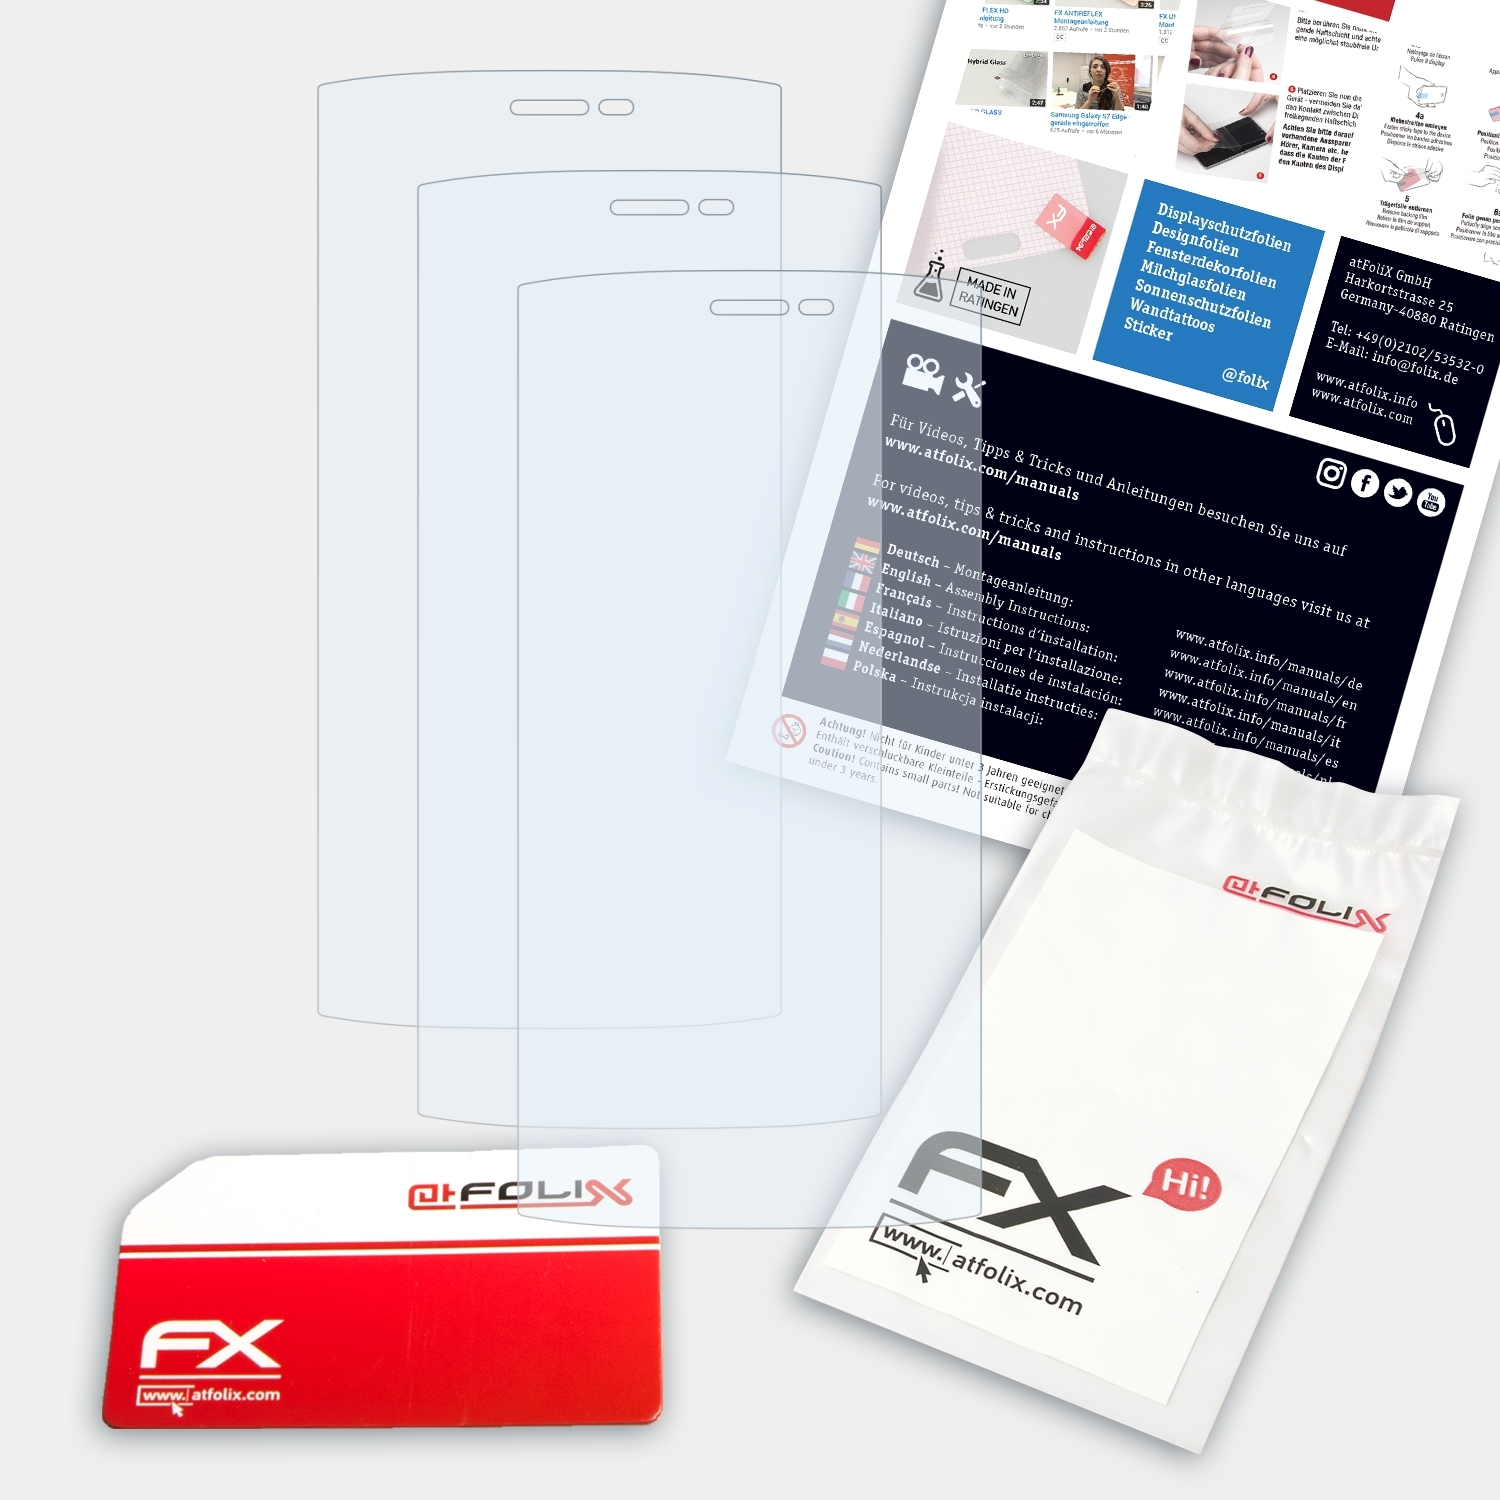 ATFOLIX 3x FX-Clear Displayschutz(für HT7 Homtom Pro)